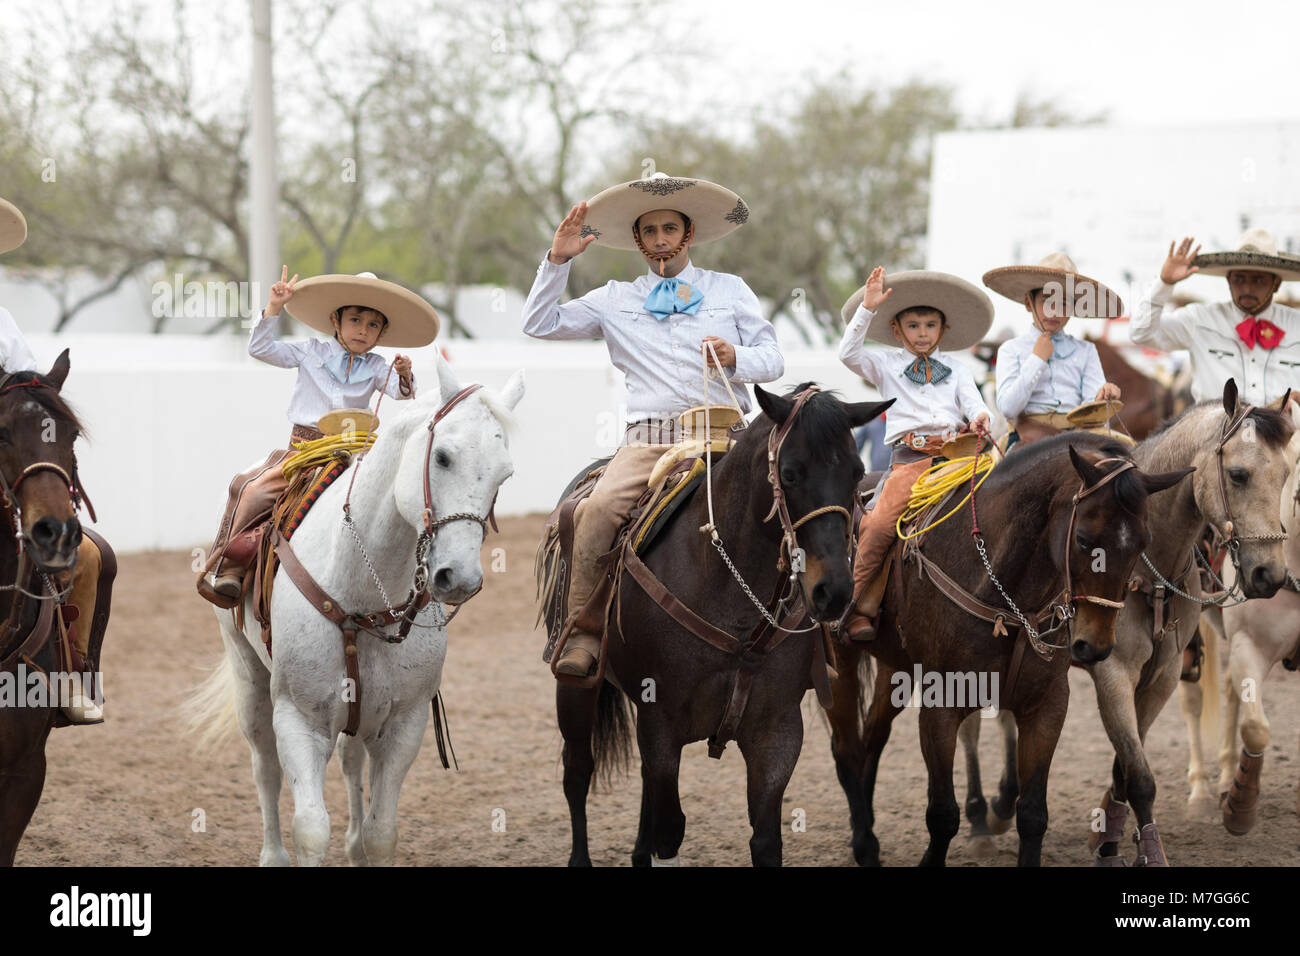 Matamoros, Tamaulipas, Mexique - Le 25 février 2018, Charreada Fiestas Mexicanas fait partie du Charro Jours Fiesta - Fiestas Mexicanas, un bi-national fe Banque D'Images